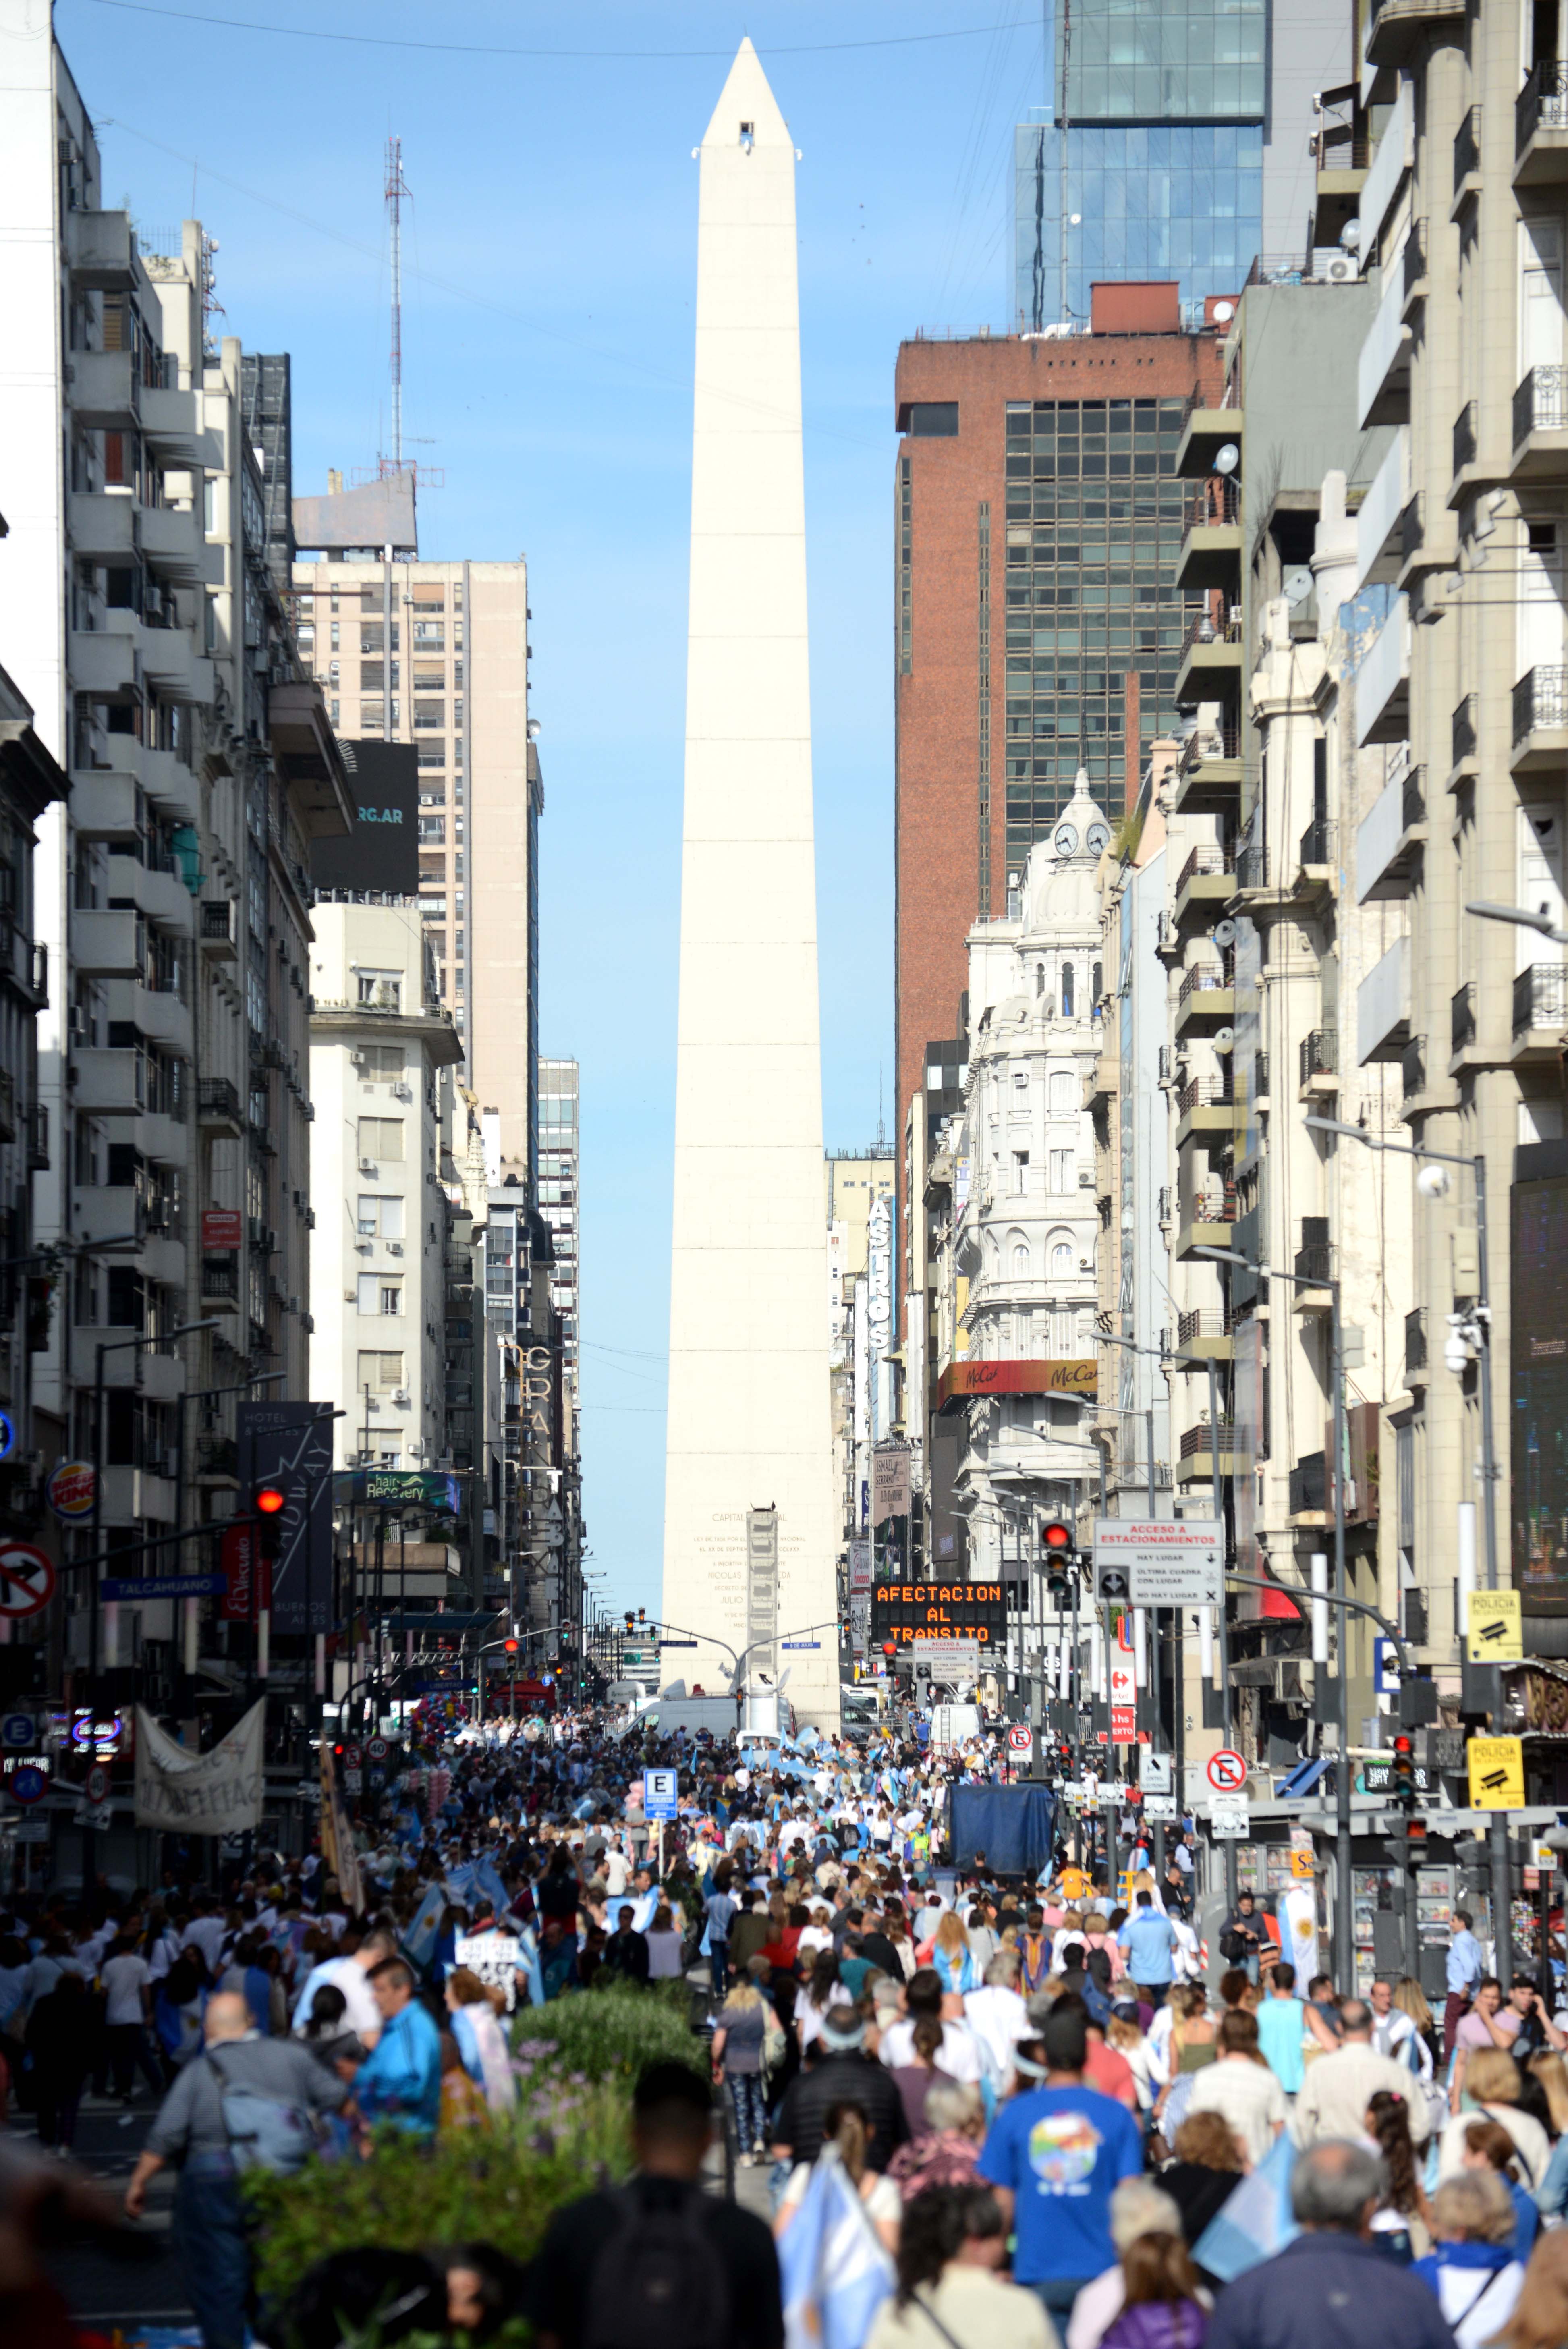 El Presidente Macri encabezó el acto multitudinario de la Marcha del Sí Se Puede en la Ciudad de Buenos Aires.